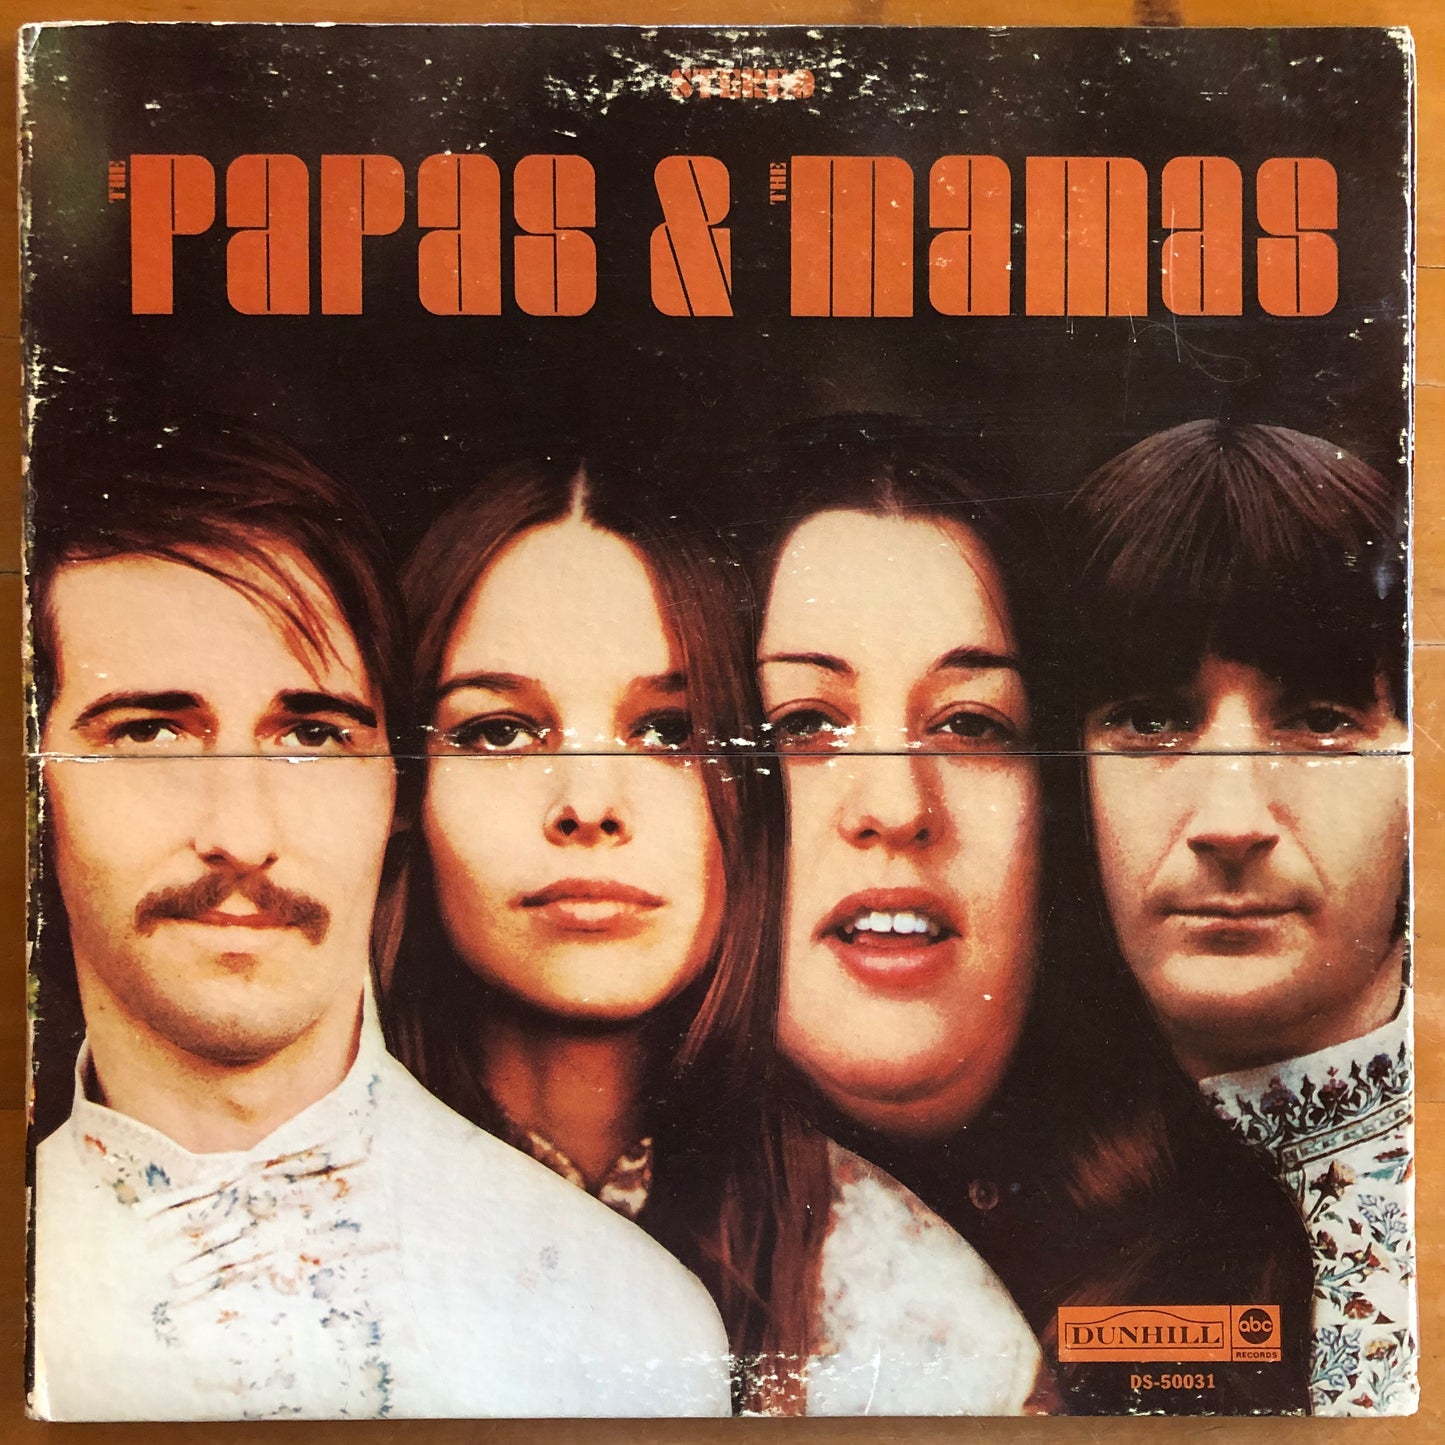 The Mamas & The Papas - The Papas & The Mamas